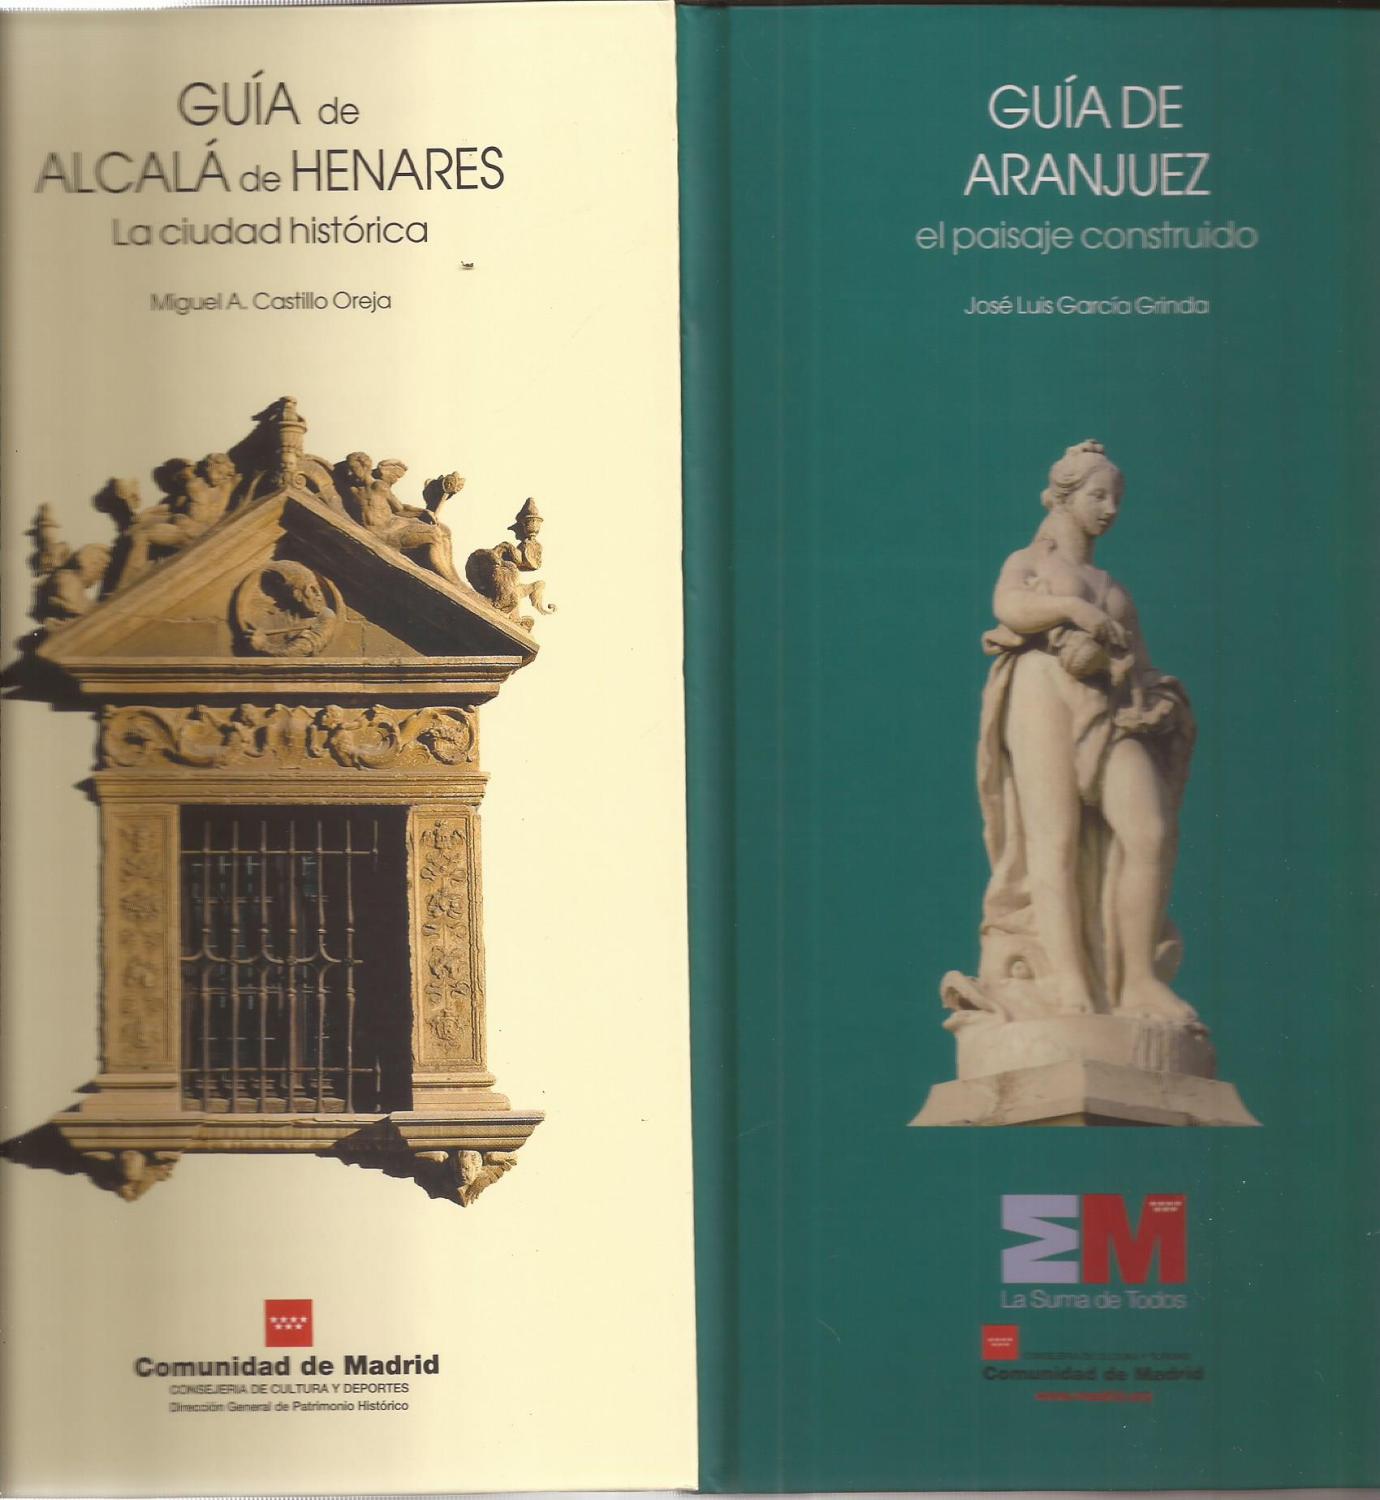 Guías de El Real sitio de El Escorial, Aranjuez y Alcalá de Henares. (Estuche) 3 Tomos - García Grinda, Castillo Oreja y Humanes Bustamante